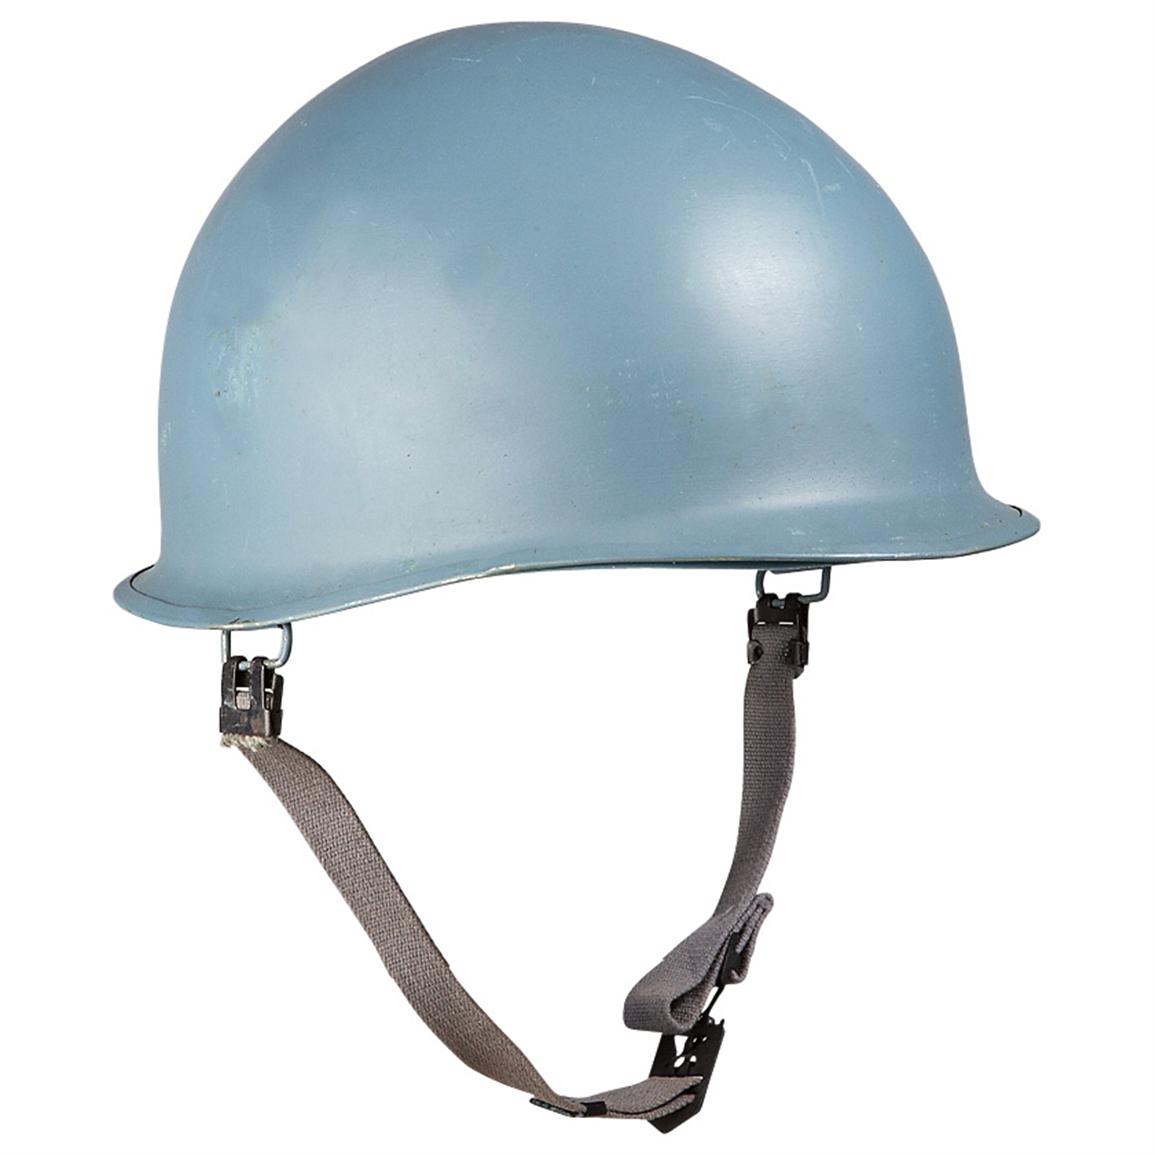 Belgian Military Surplus UN Helmet with Liner, New, Blue